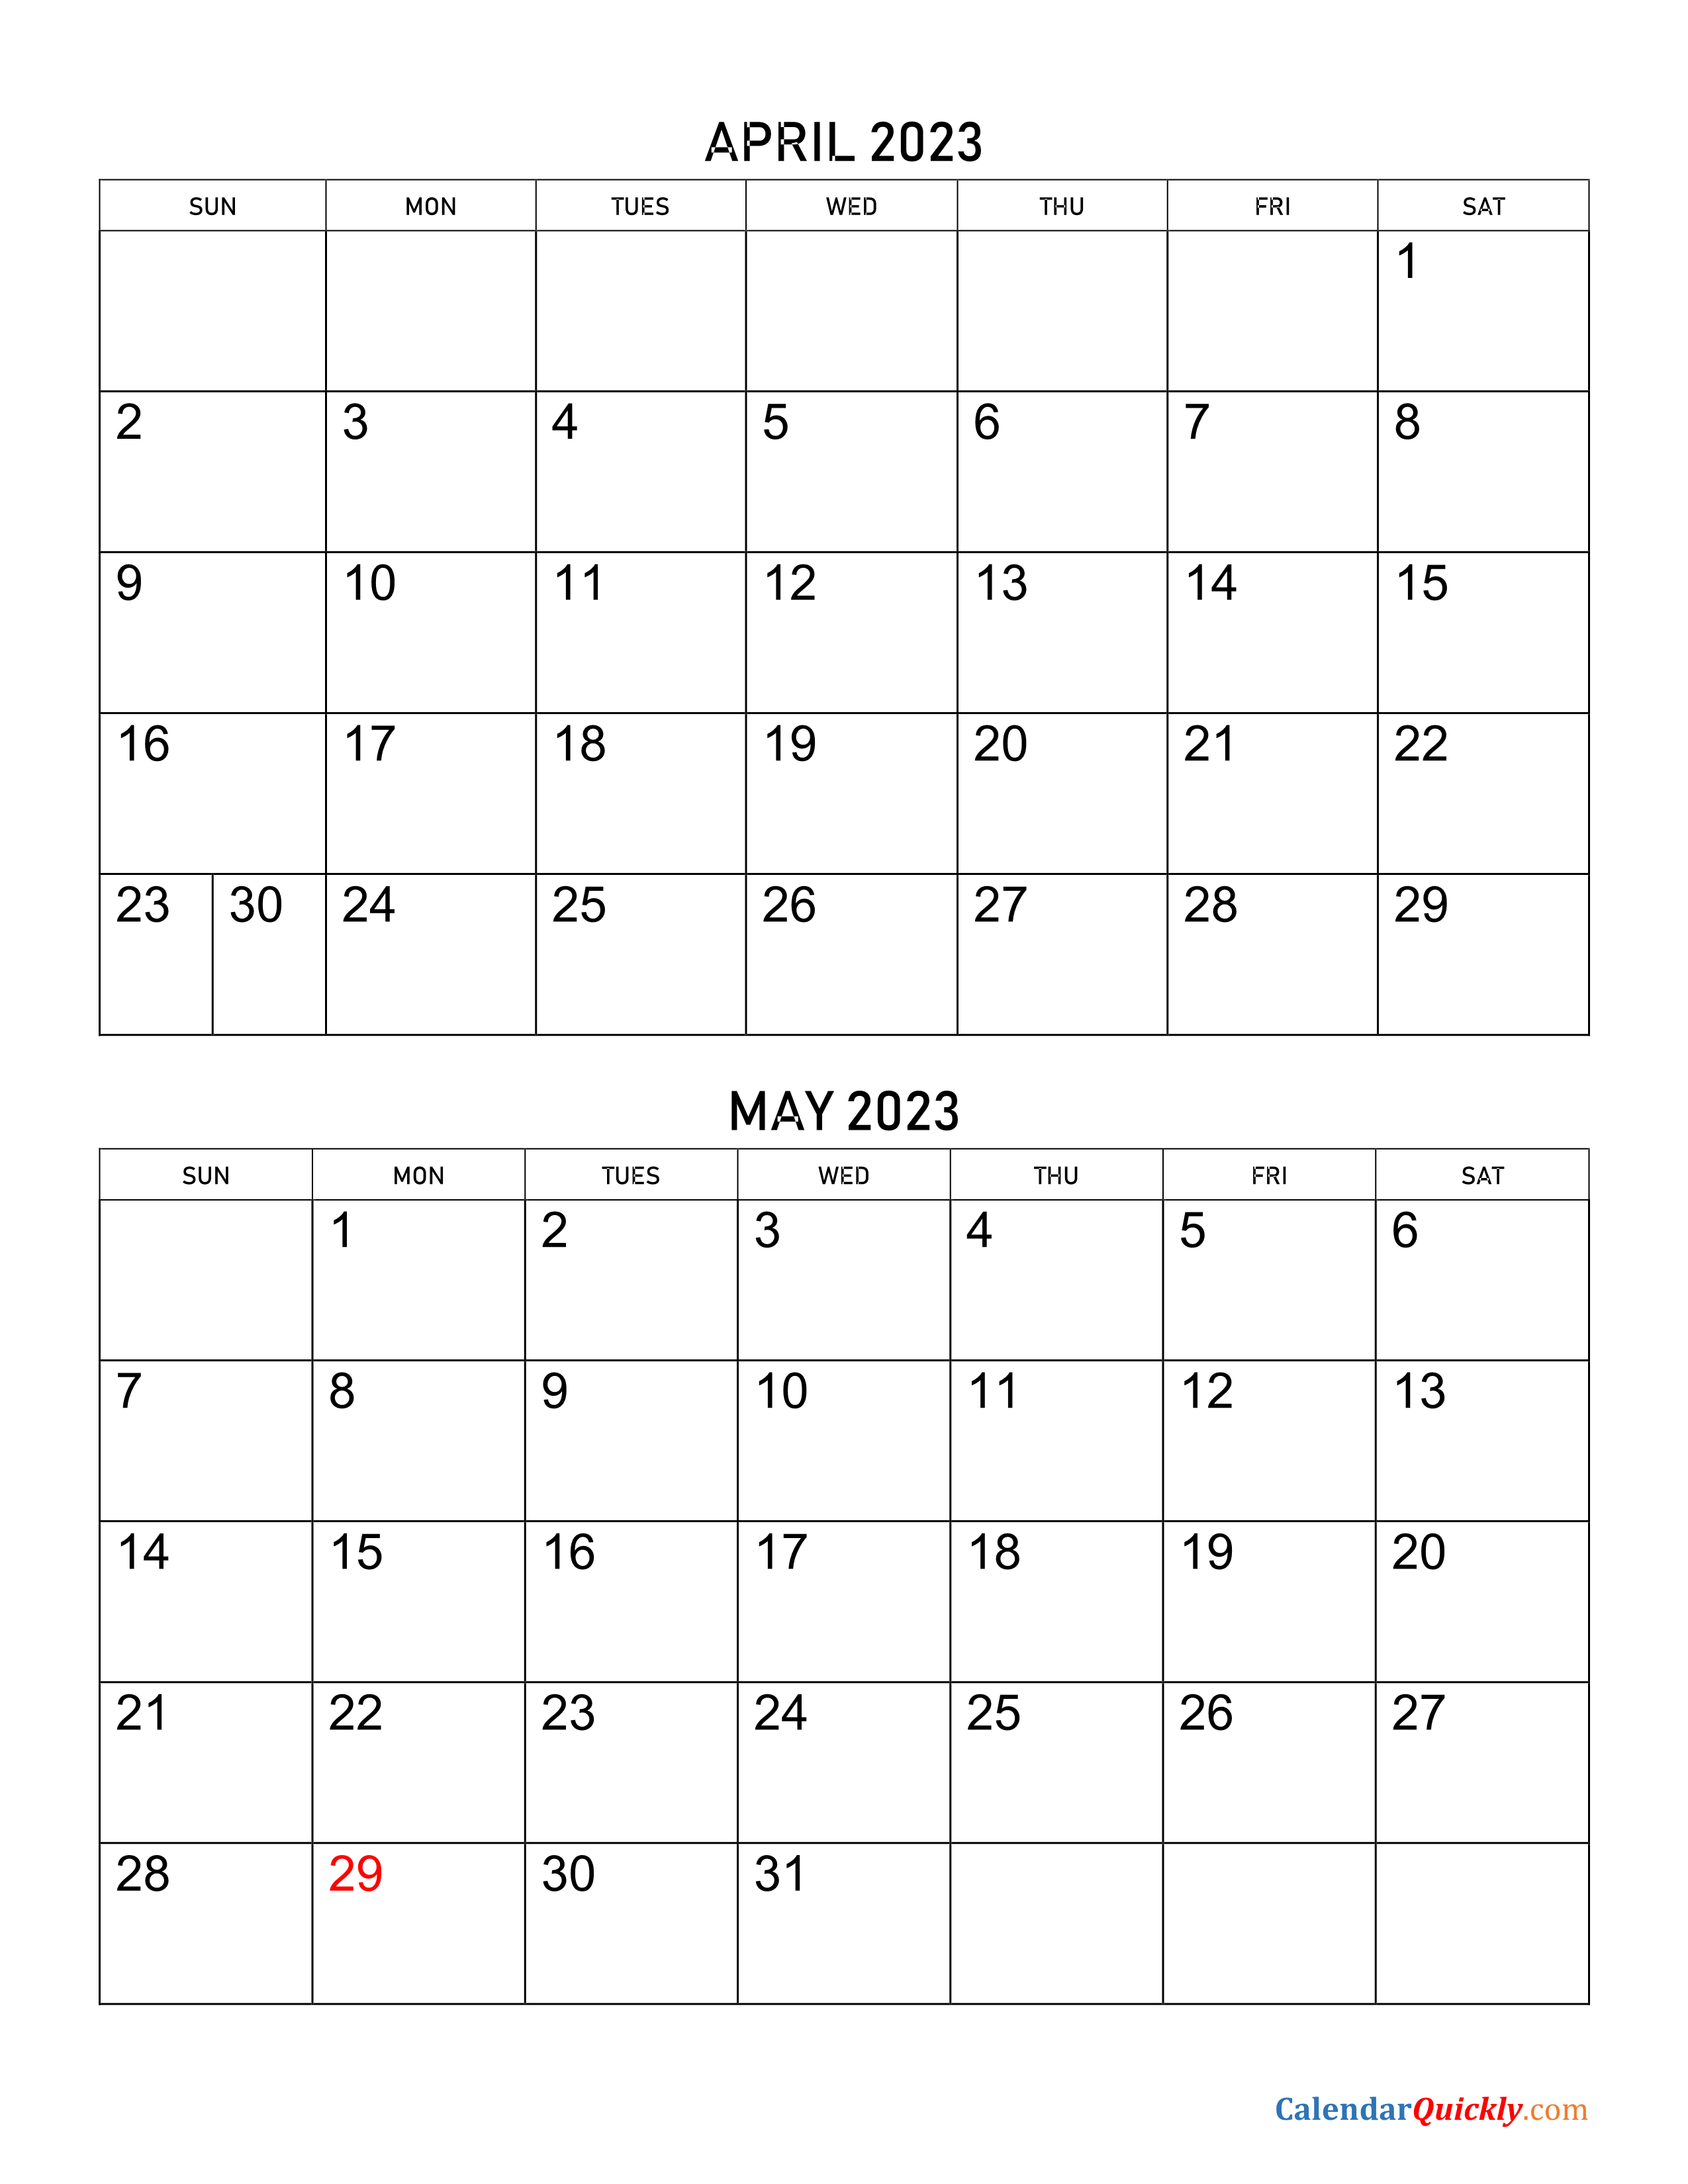 April and May 2023 Calendar | Calendar Quickly